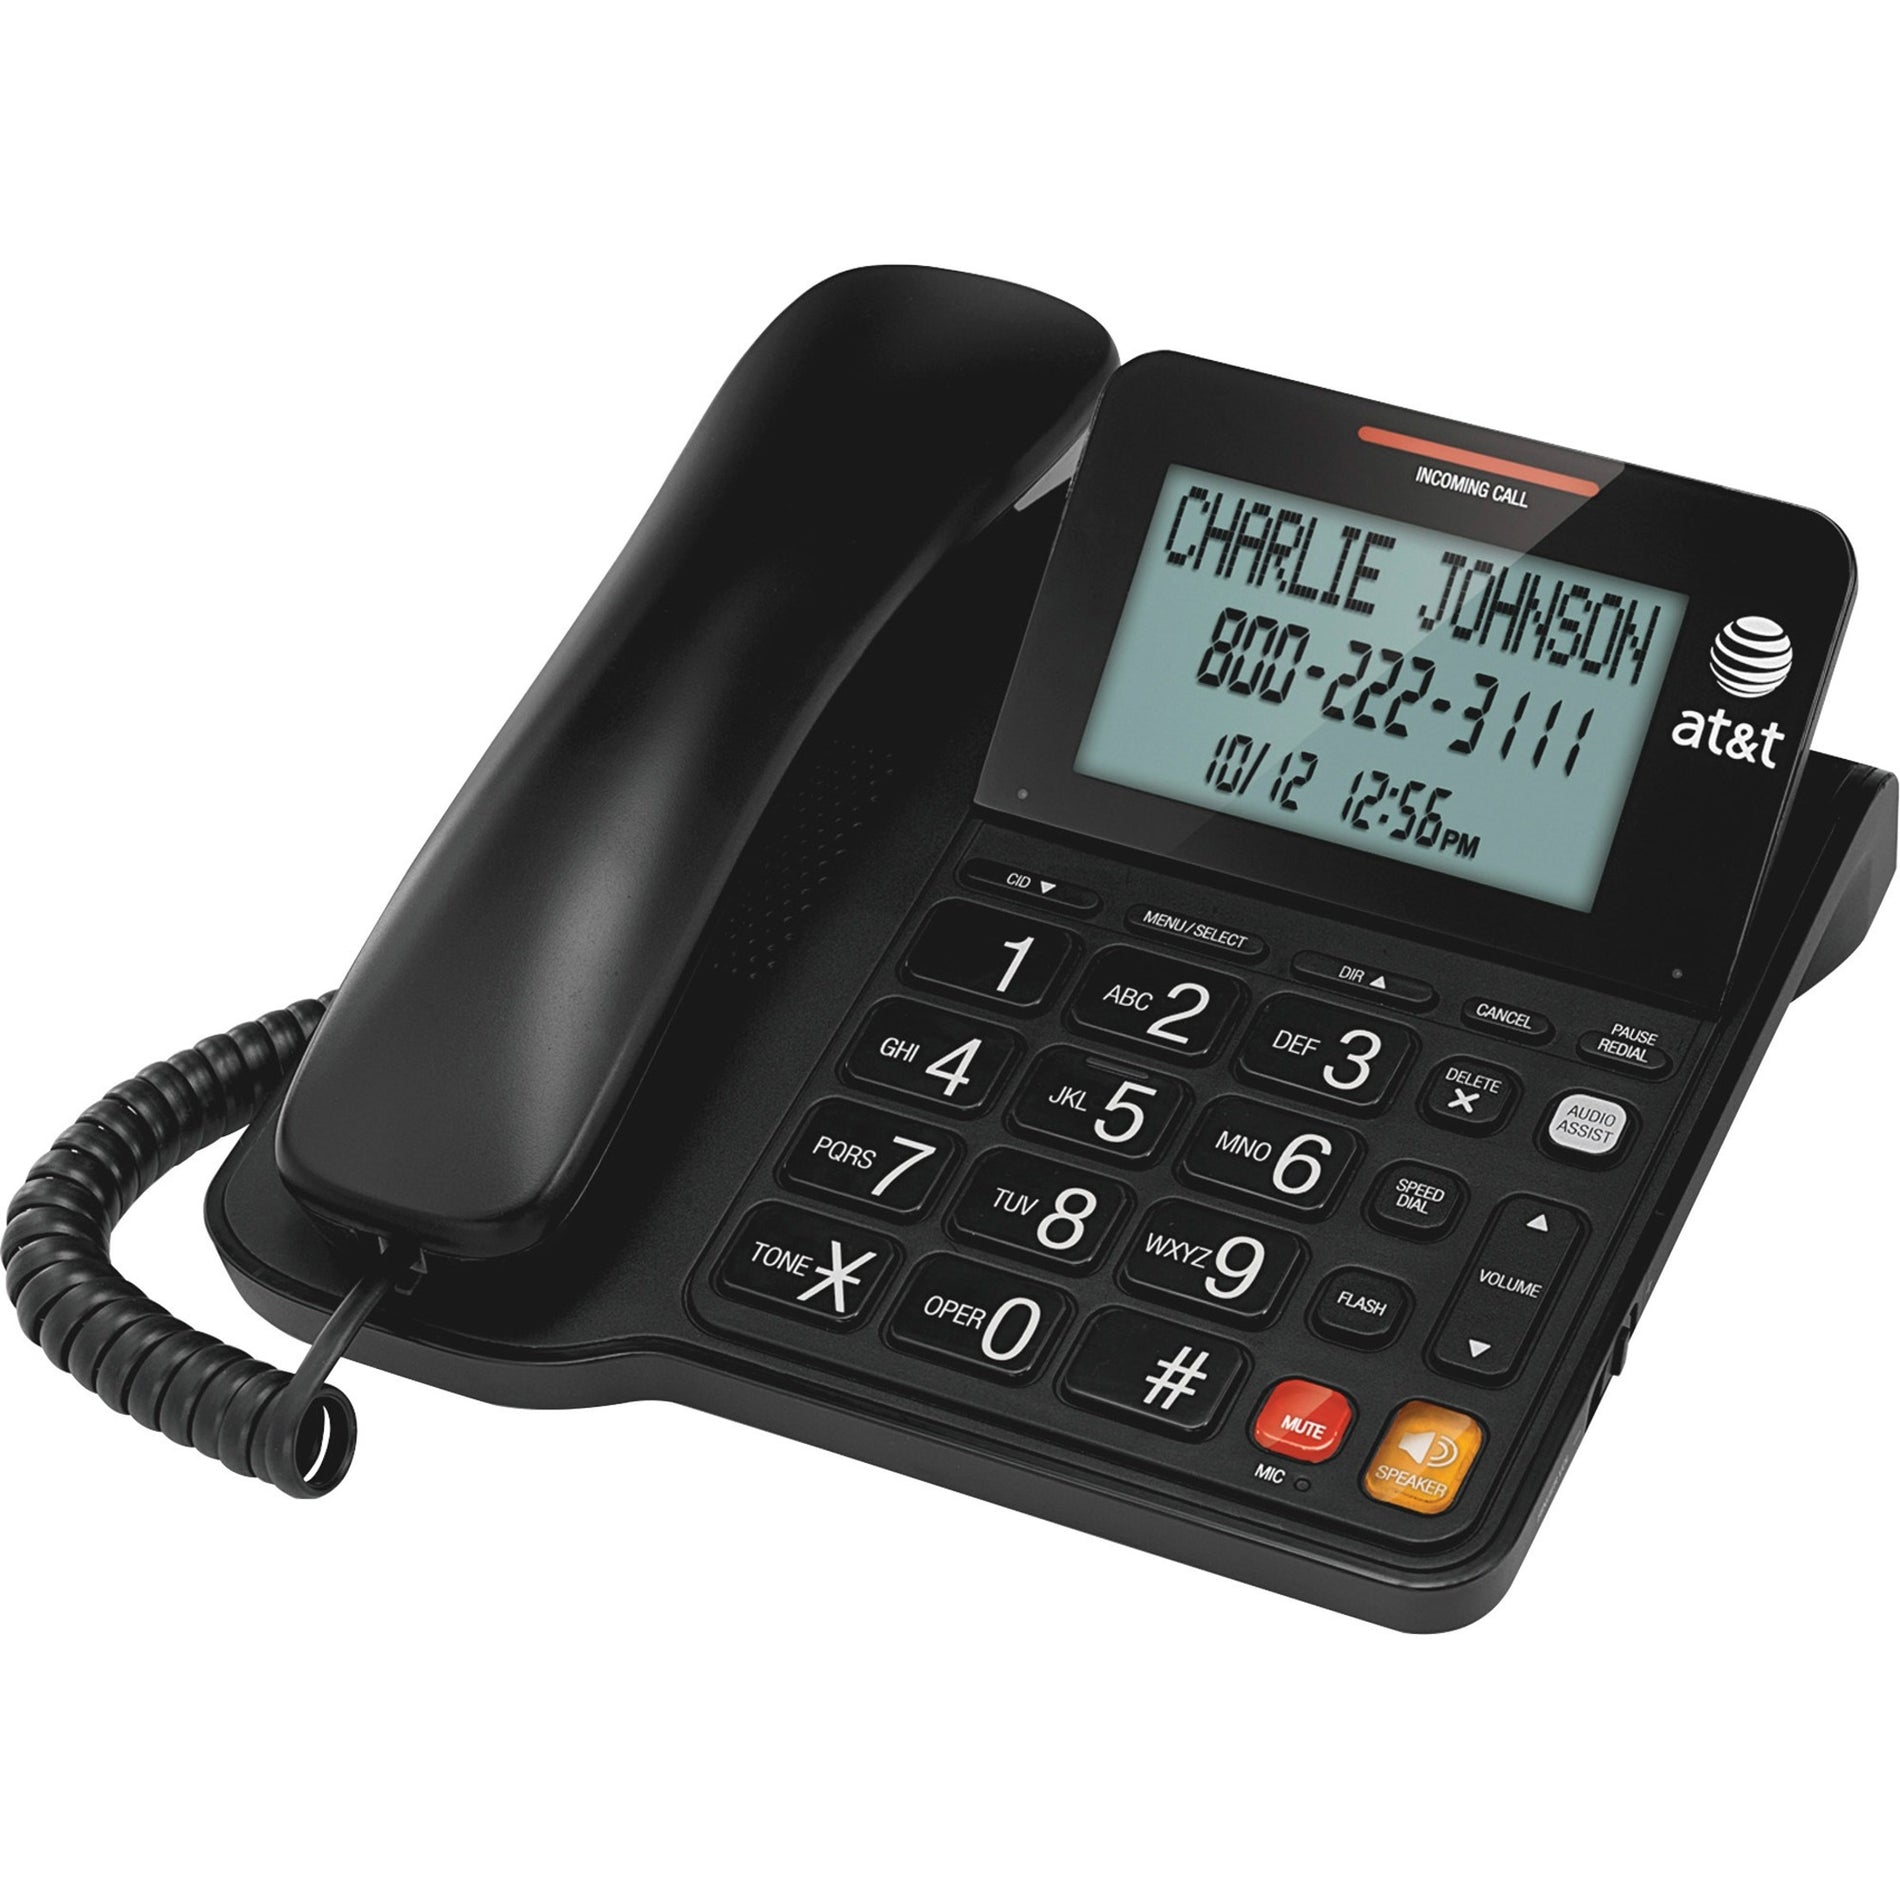 AT&T CL2940 Standard Phone, Large Tilt Display, Corded, Black